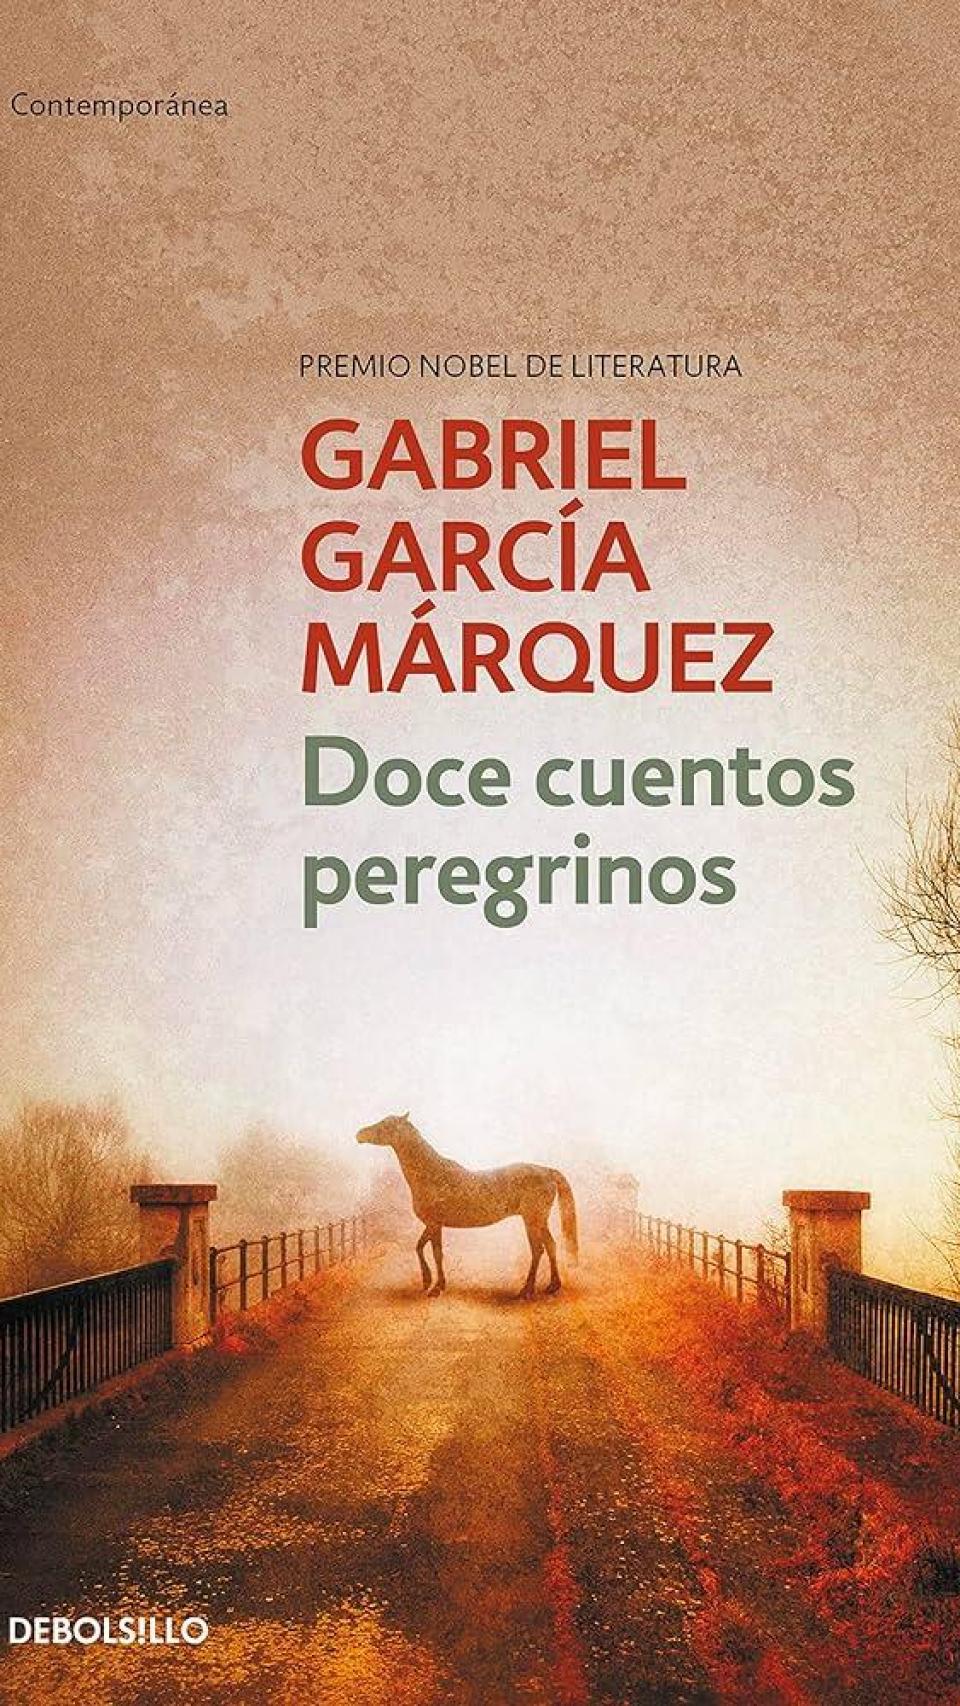 Portada de 'Doce cuentos peregrinos', de García Márquez